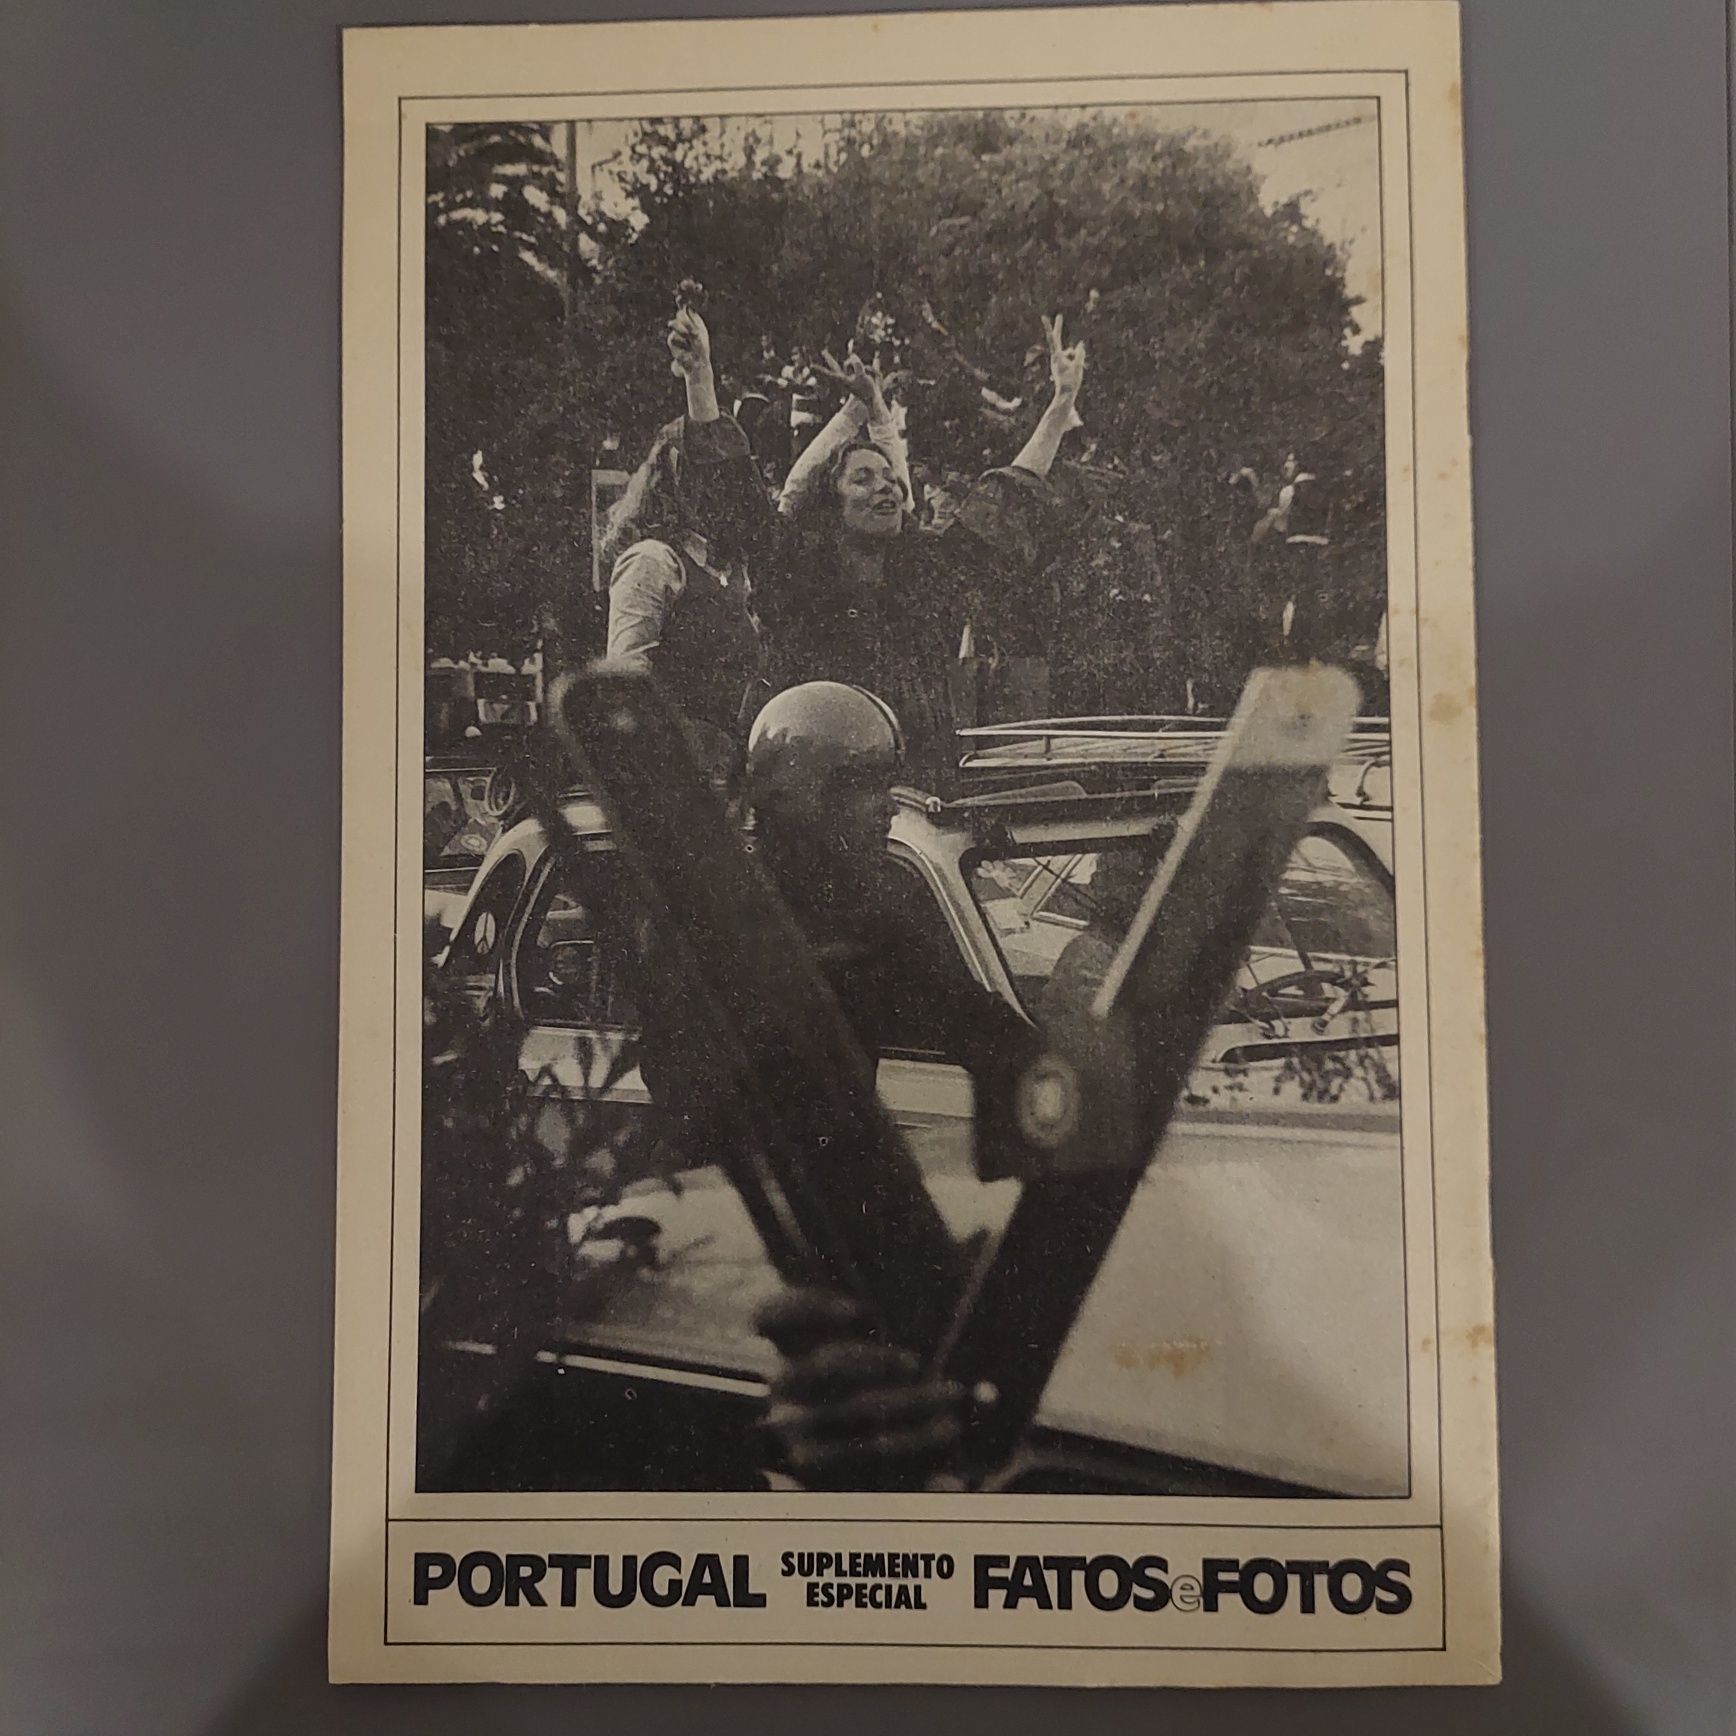 Fatos e Fotos nr 664 Revolução em Portugal